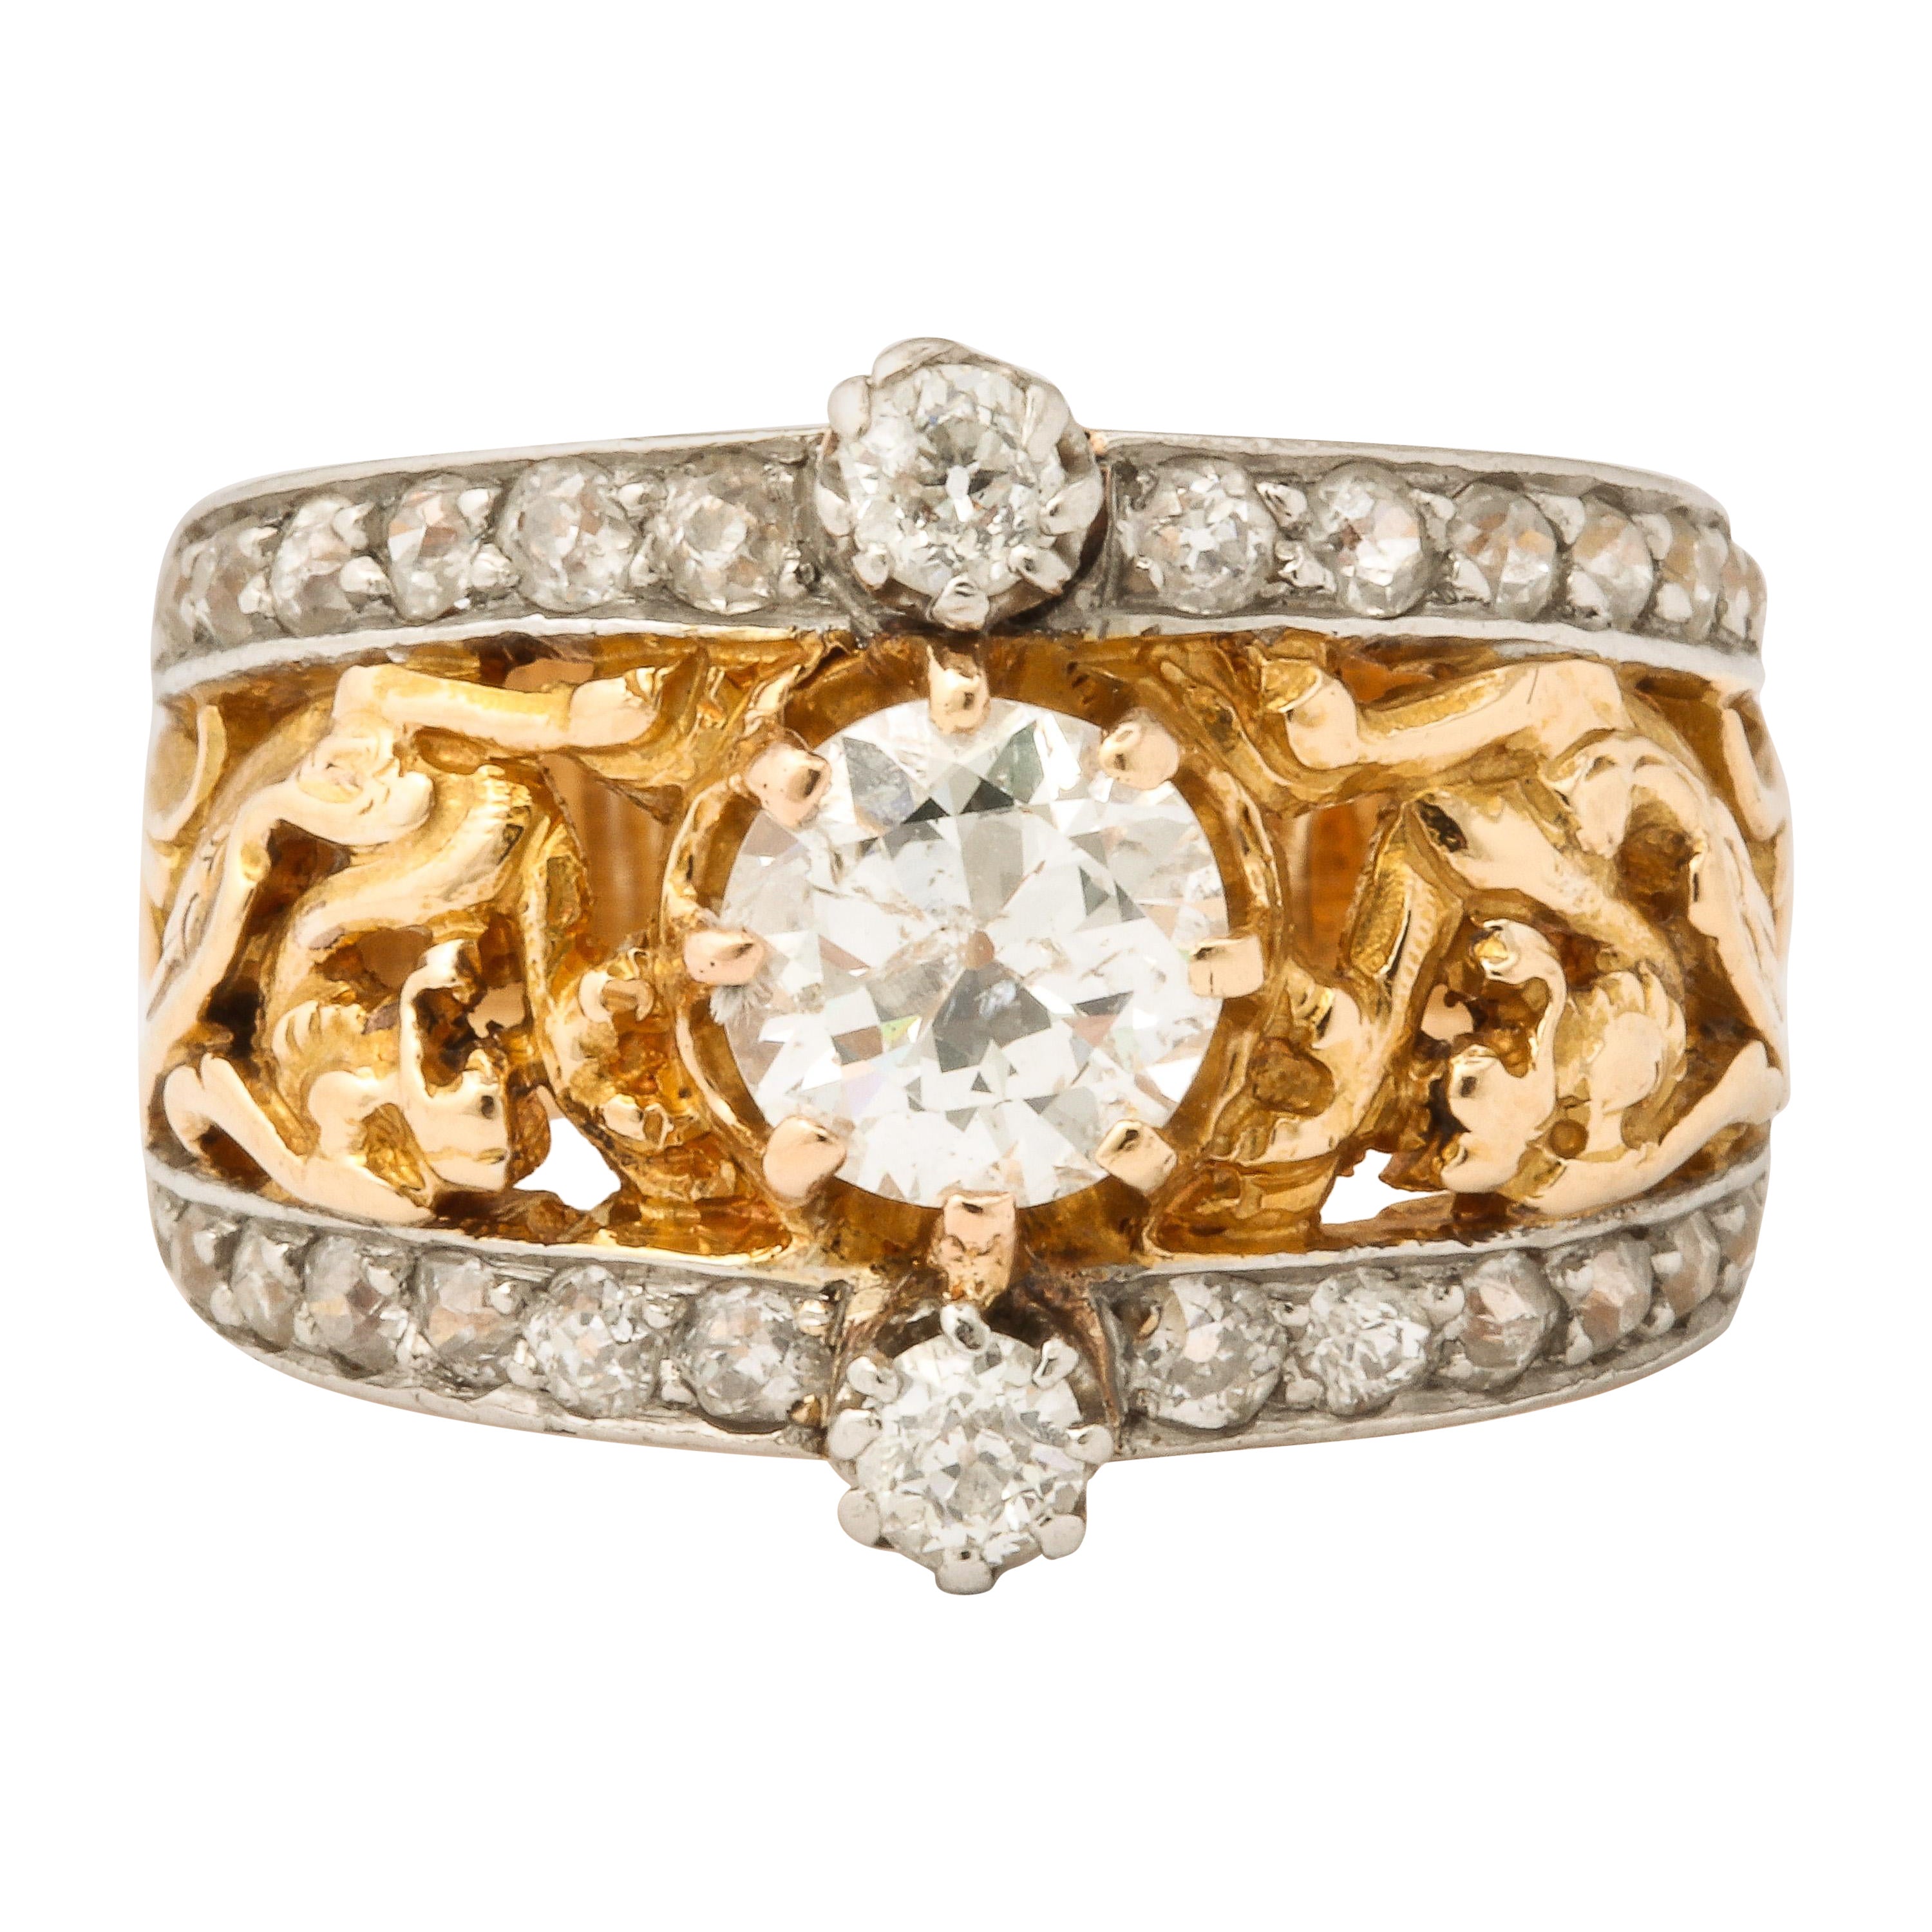 Antique French Art Nouveau Diamond Ring 